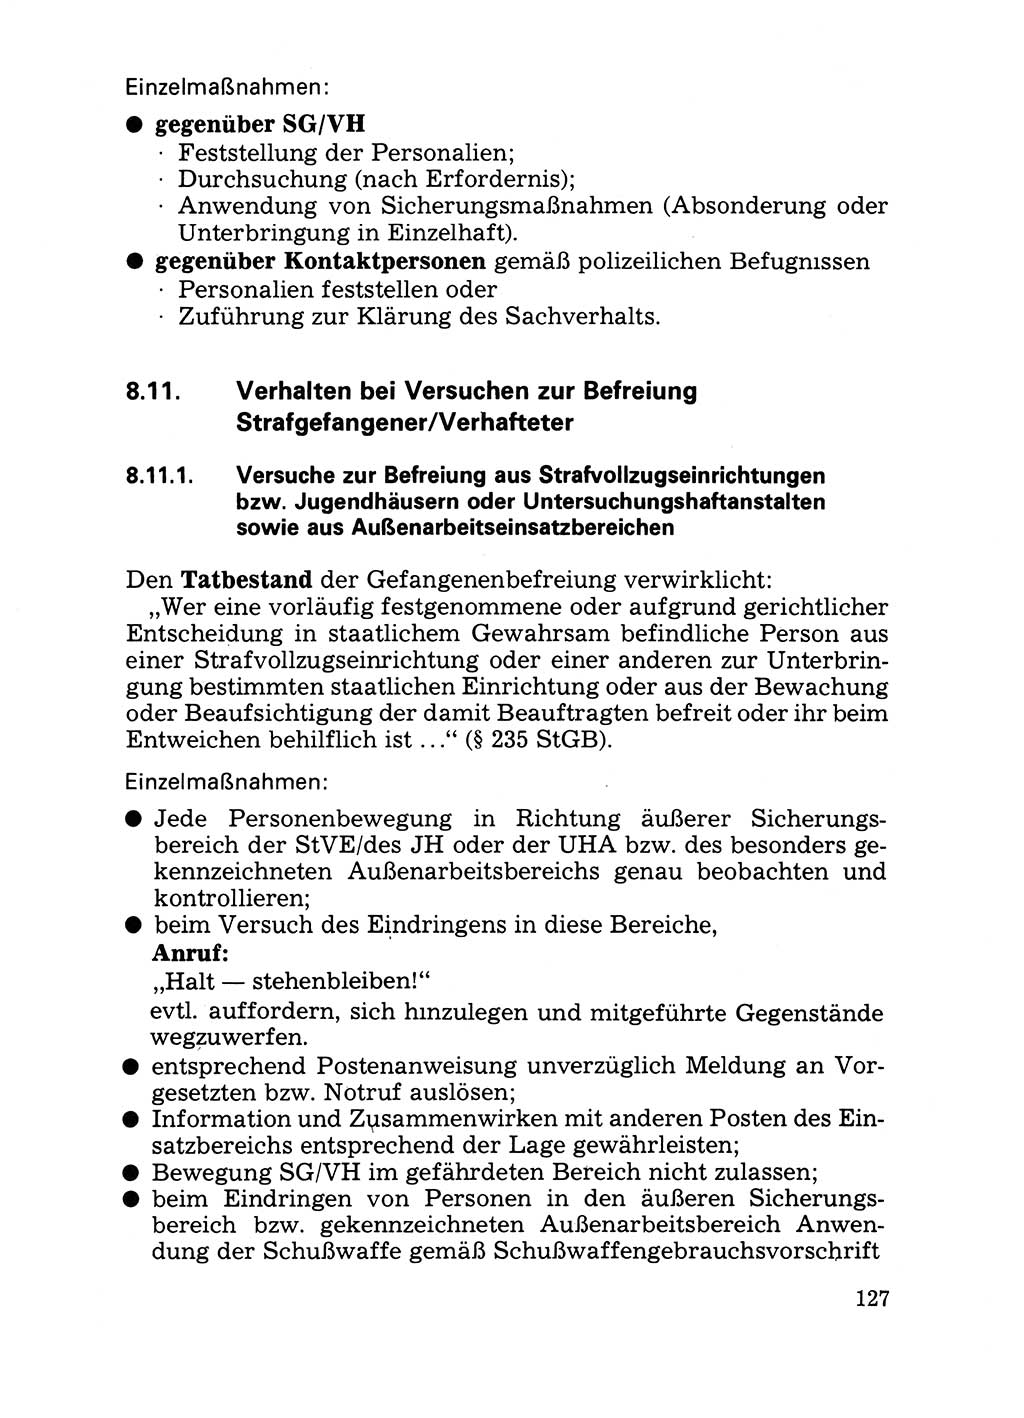 Handbuch für operative Dienste, Abteilung Strafvollzug (SV) [Ministerium des Innern (MdI) Deutsche Demokratische Republik (DDR)] 1981, Seite 127 (Hb. op. D. Abt. SV MdI DDR 1981, S. 127)